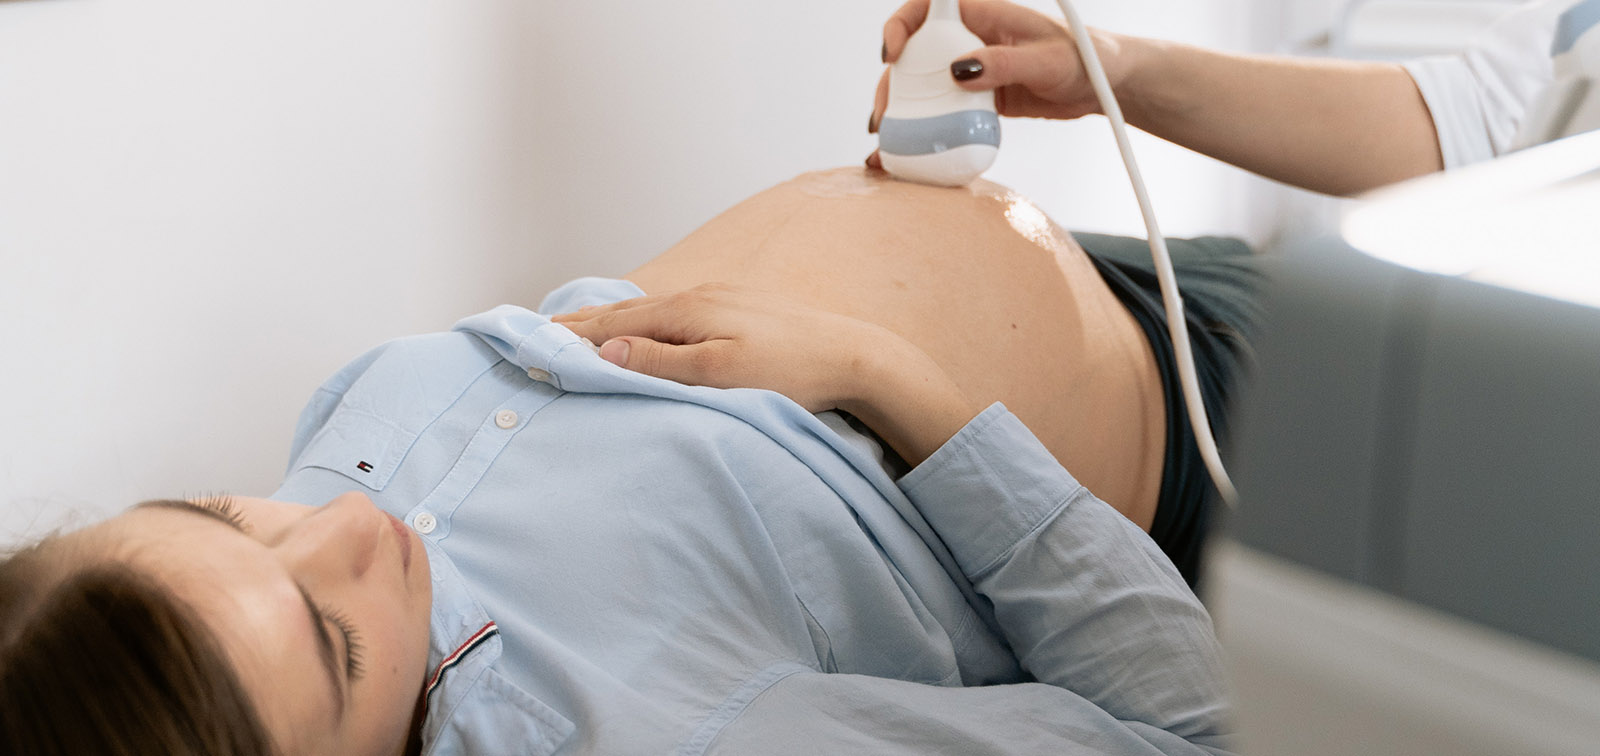 Mujer embarazada en una consulta médica